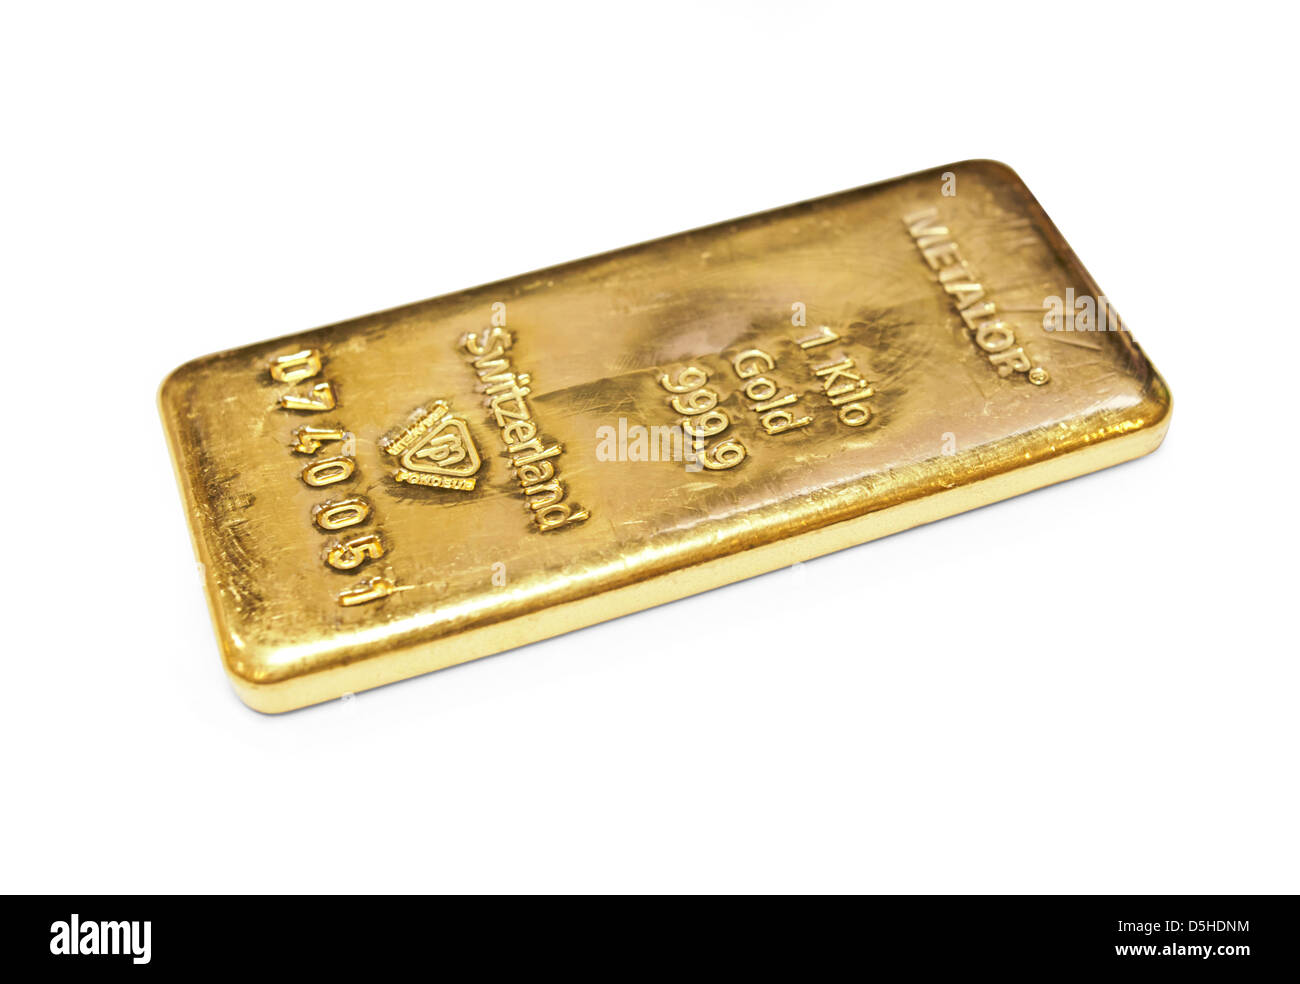 Un kilogramme de la barre d'or sur fond blanc Banque D'Images